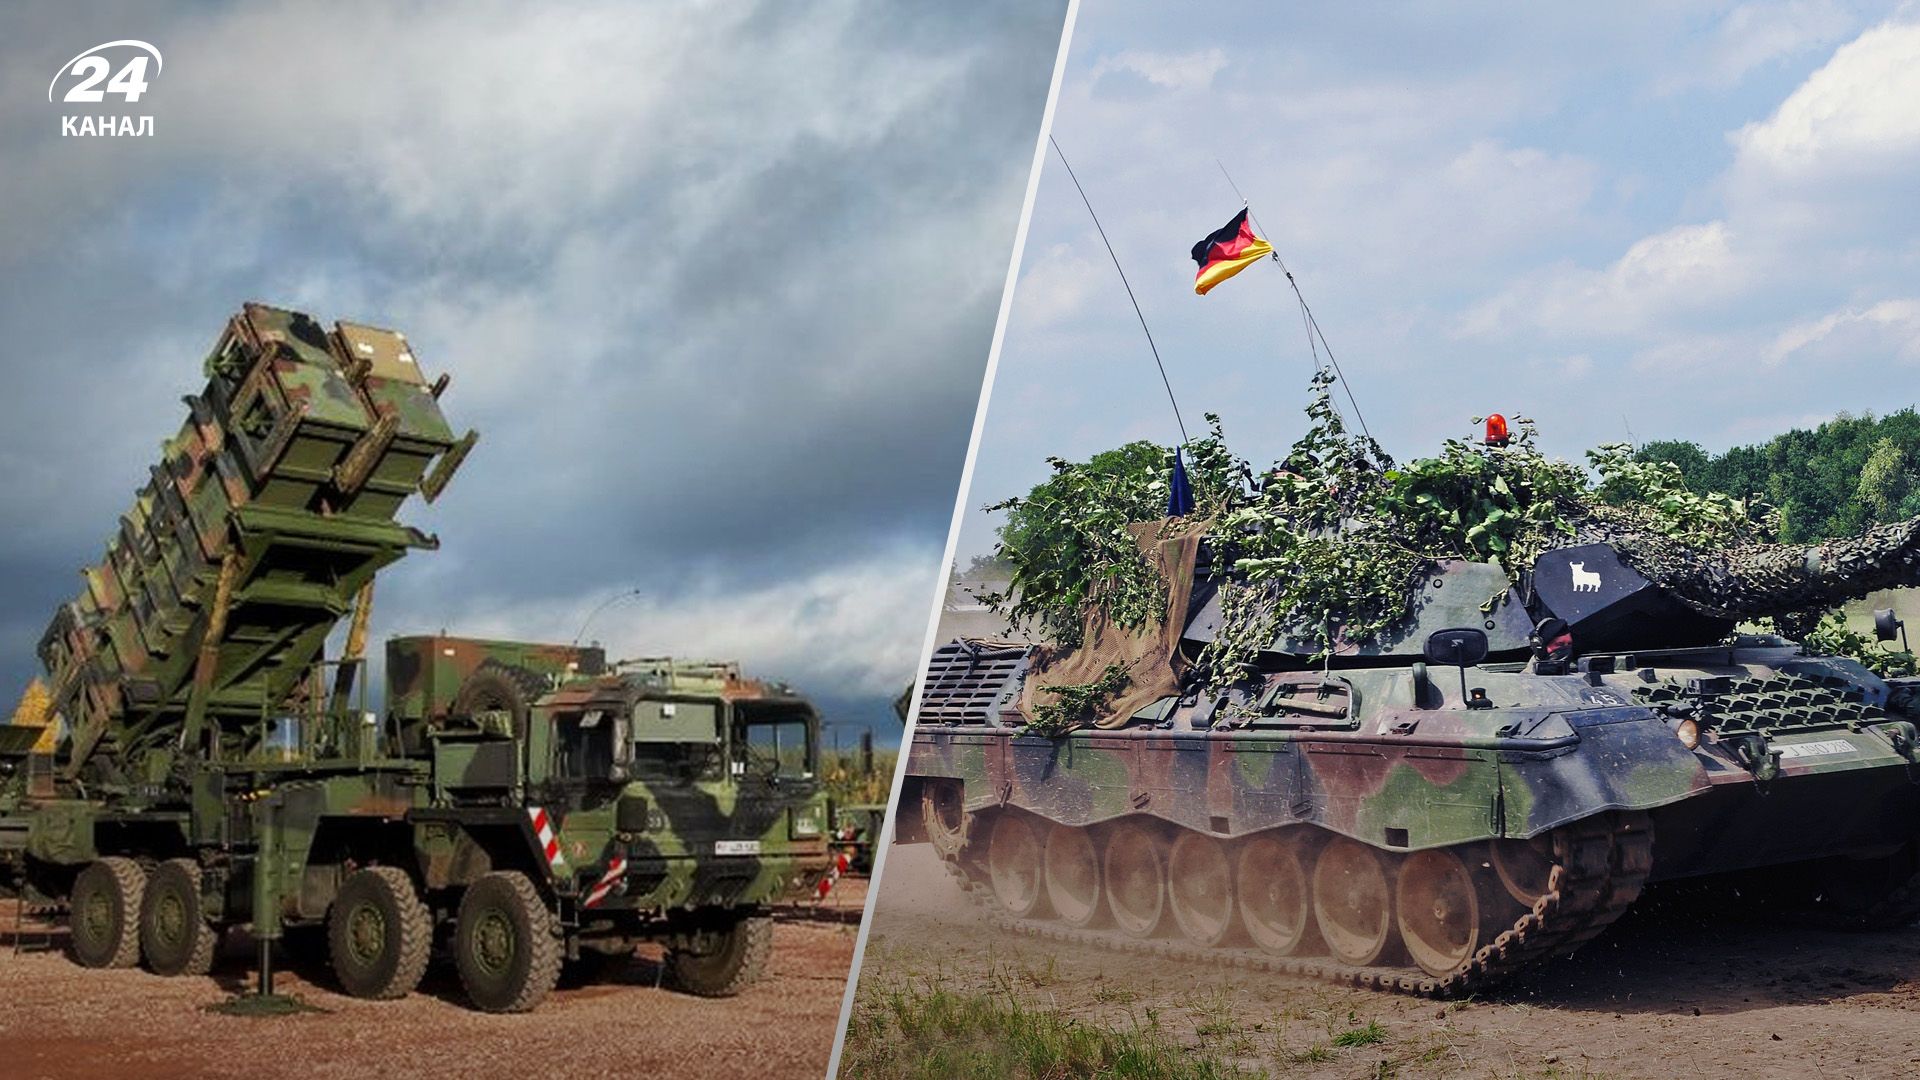 Ще більше Patriot та Leopard: Німеччина та Норвегія слідом на Францією заявили про нову допомогу - 24 Канал